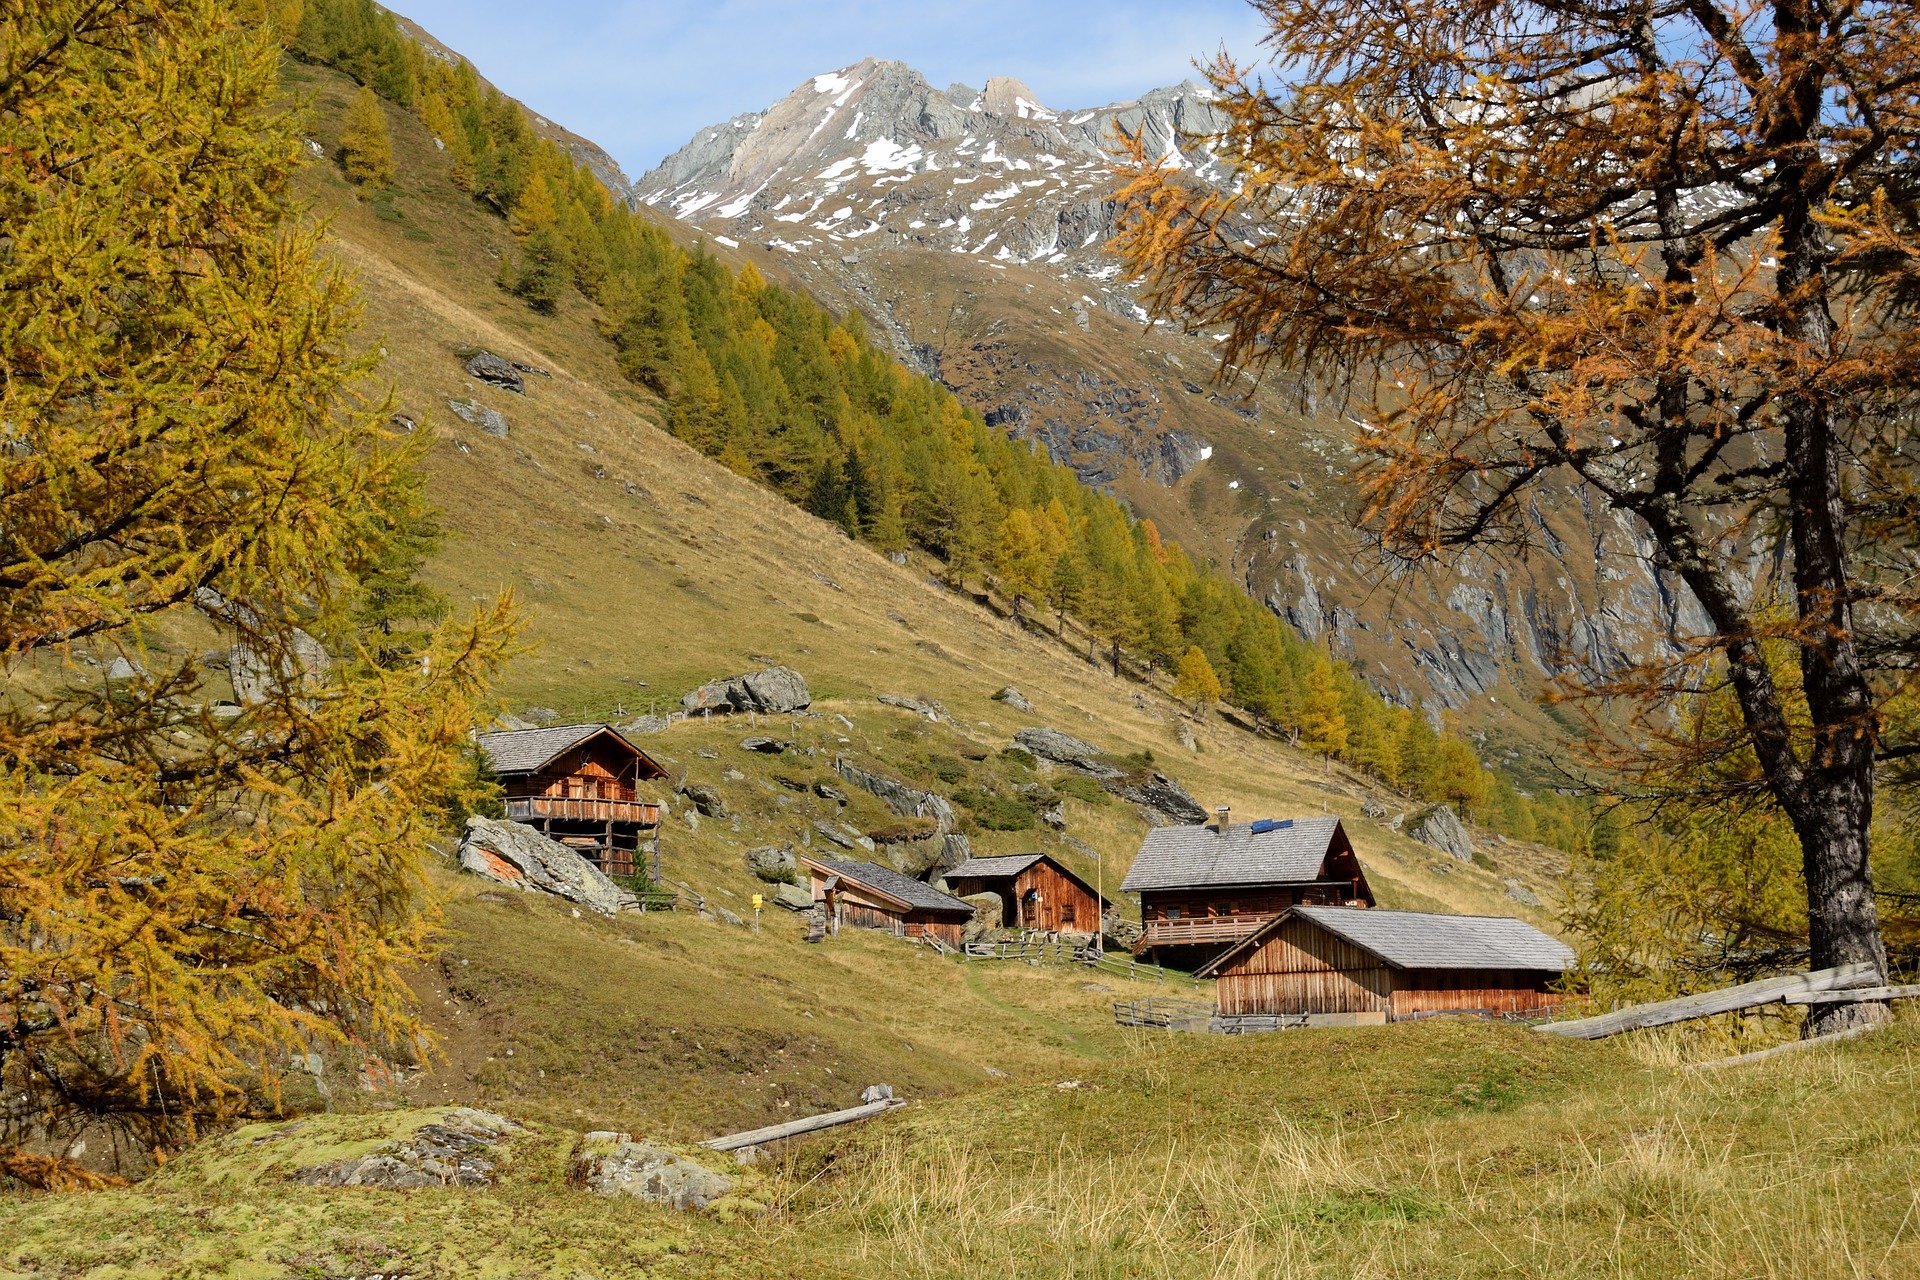 Le nuove linee guida per i rifugi alpini ed escursionistici in Piemonte